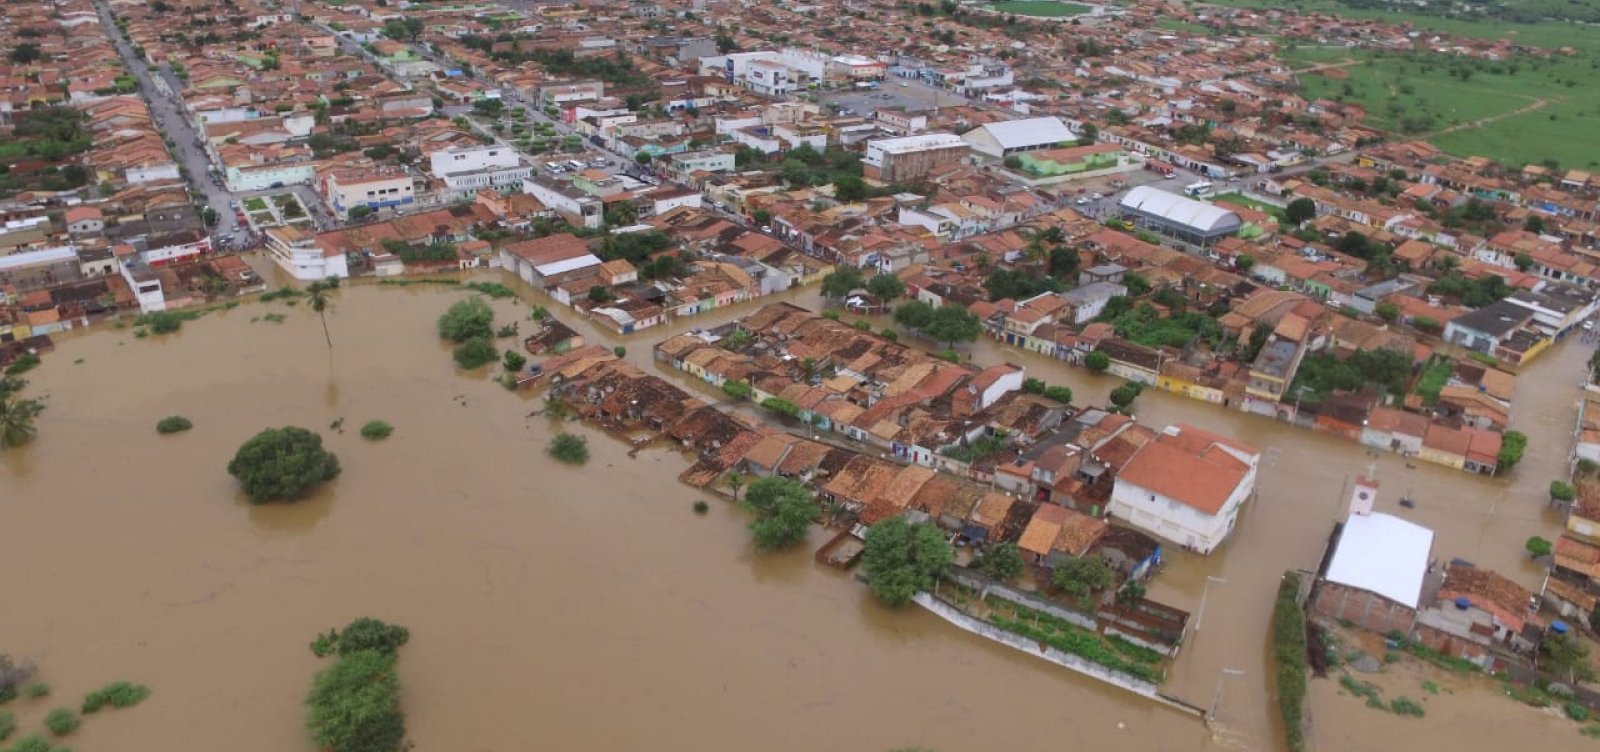  ‘Não houve rompimento de barragens em Pedro Alexandre’, diz secretário de comunicação do Governo